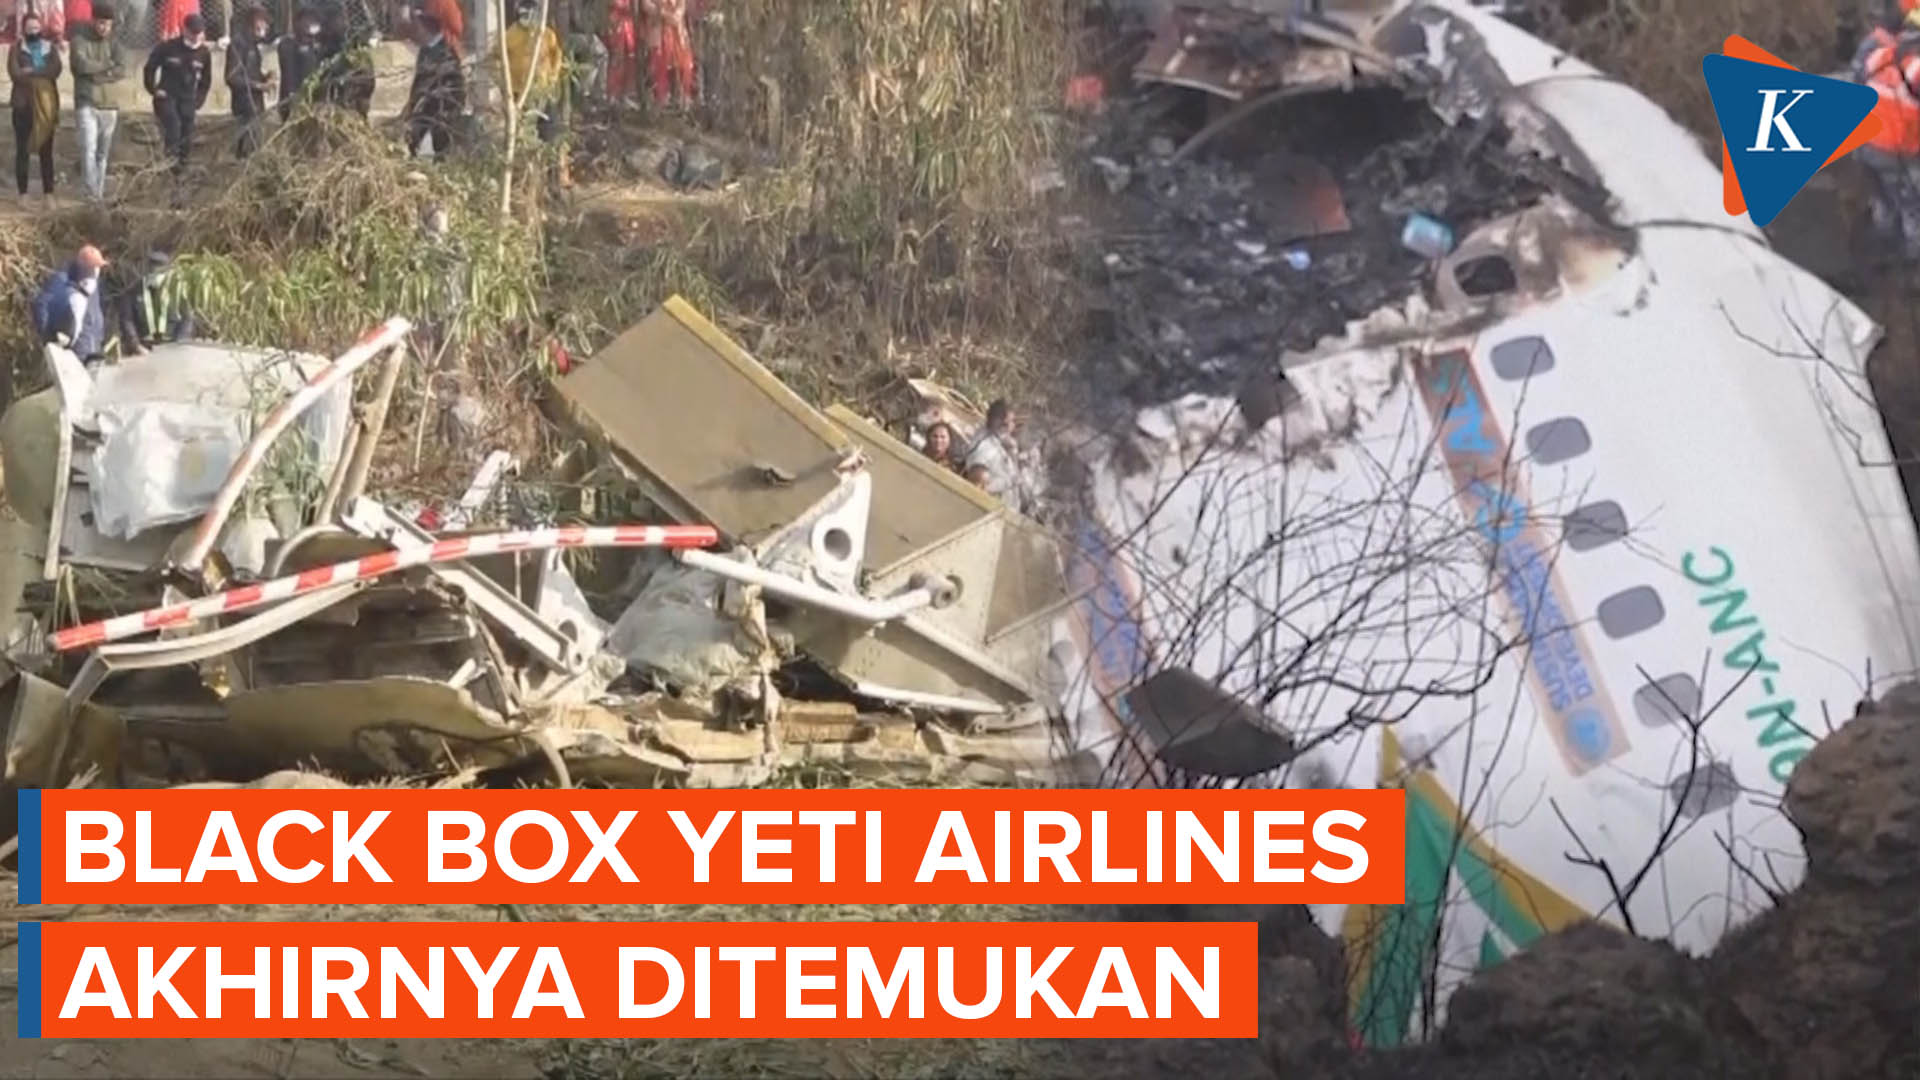 Kotak Hitam Pesawat Yeti Airlines Ditemukan, 68 Jenazah Dievakuasi